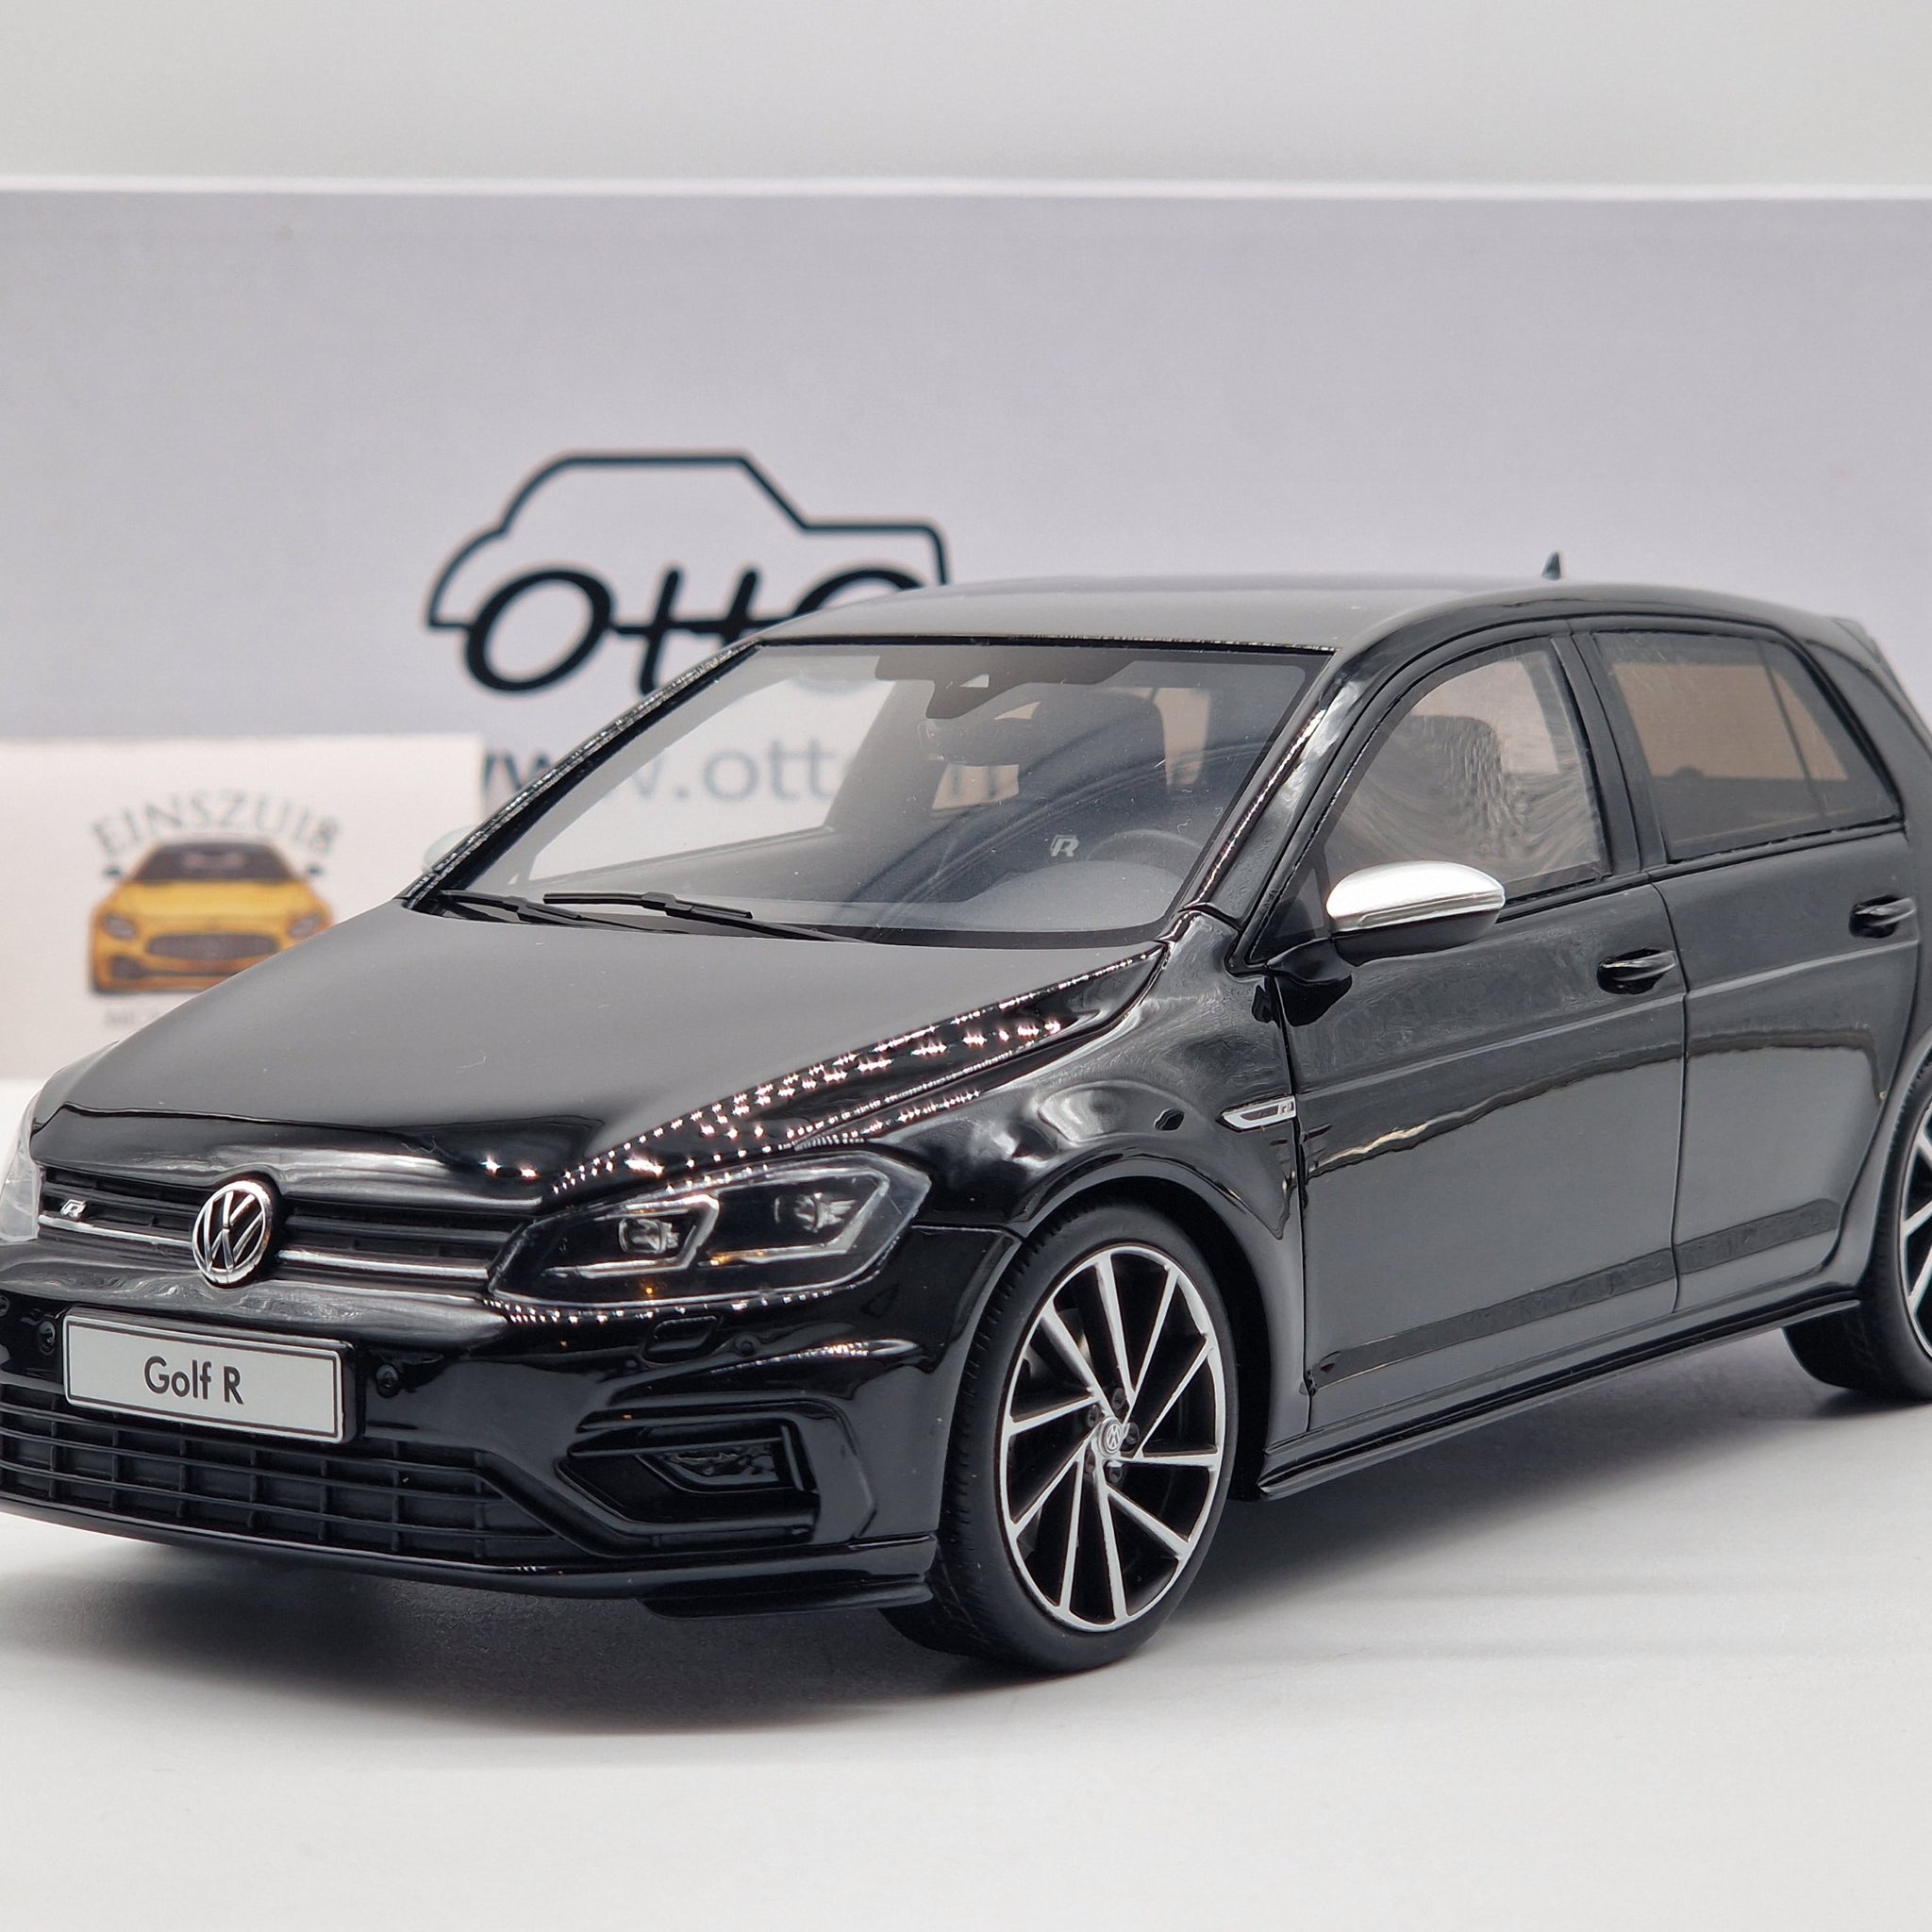 VW Volkswagen Golf VII R 5 Doors 2017 Black